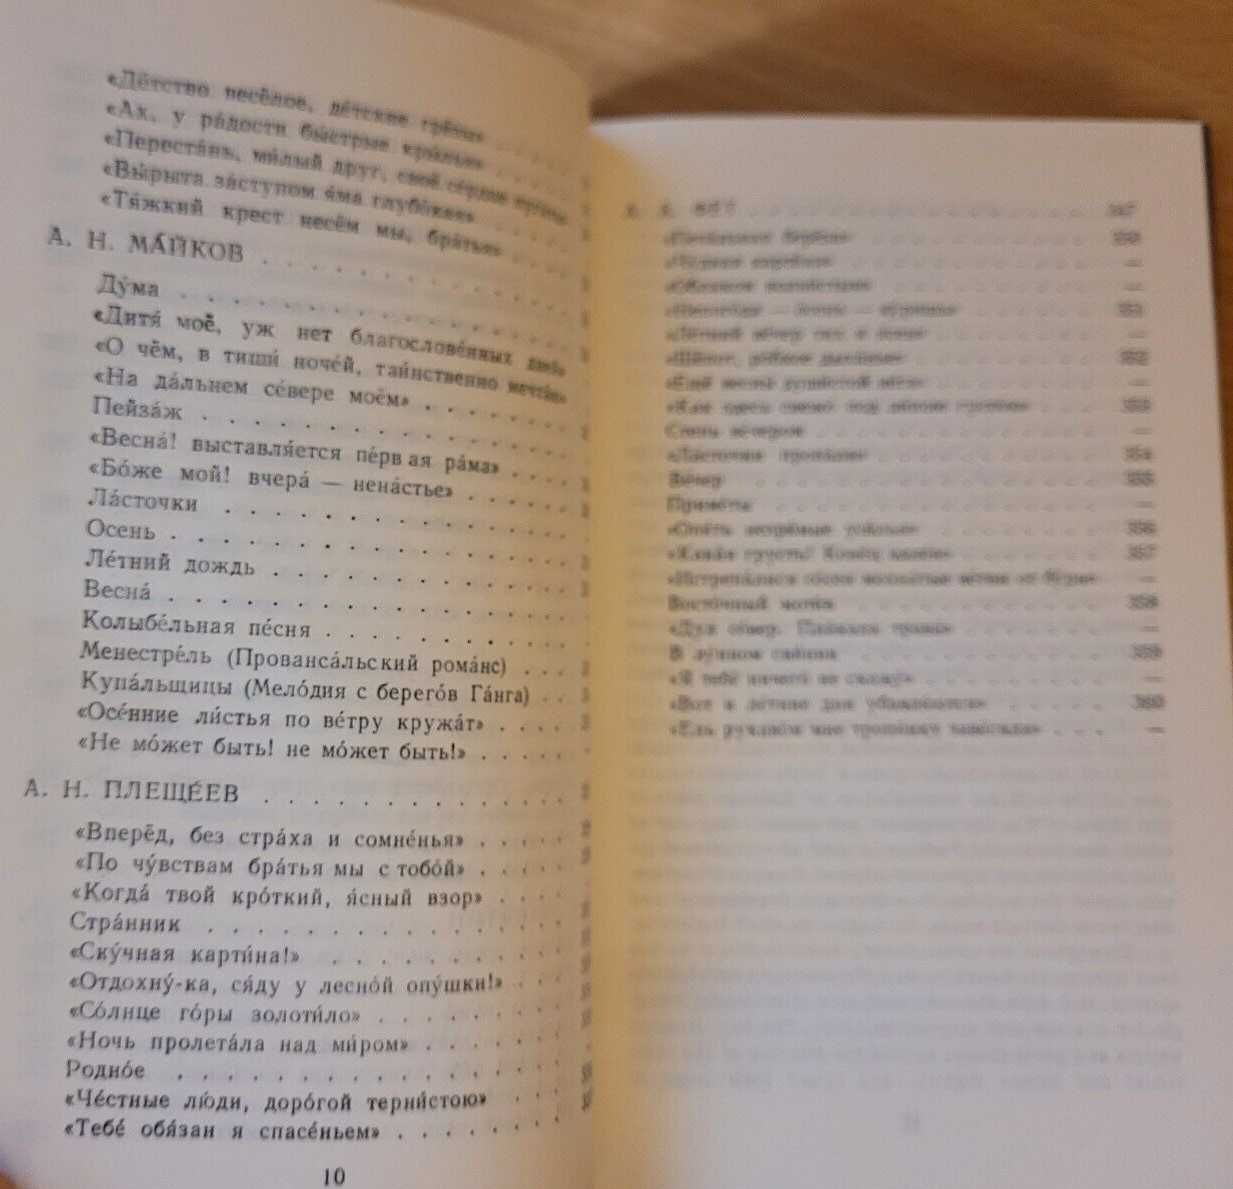 Учебник для чтения ИНОСТРАНЦАМ на русском с англ. коментами